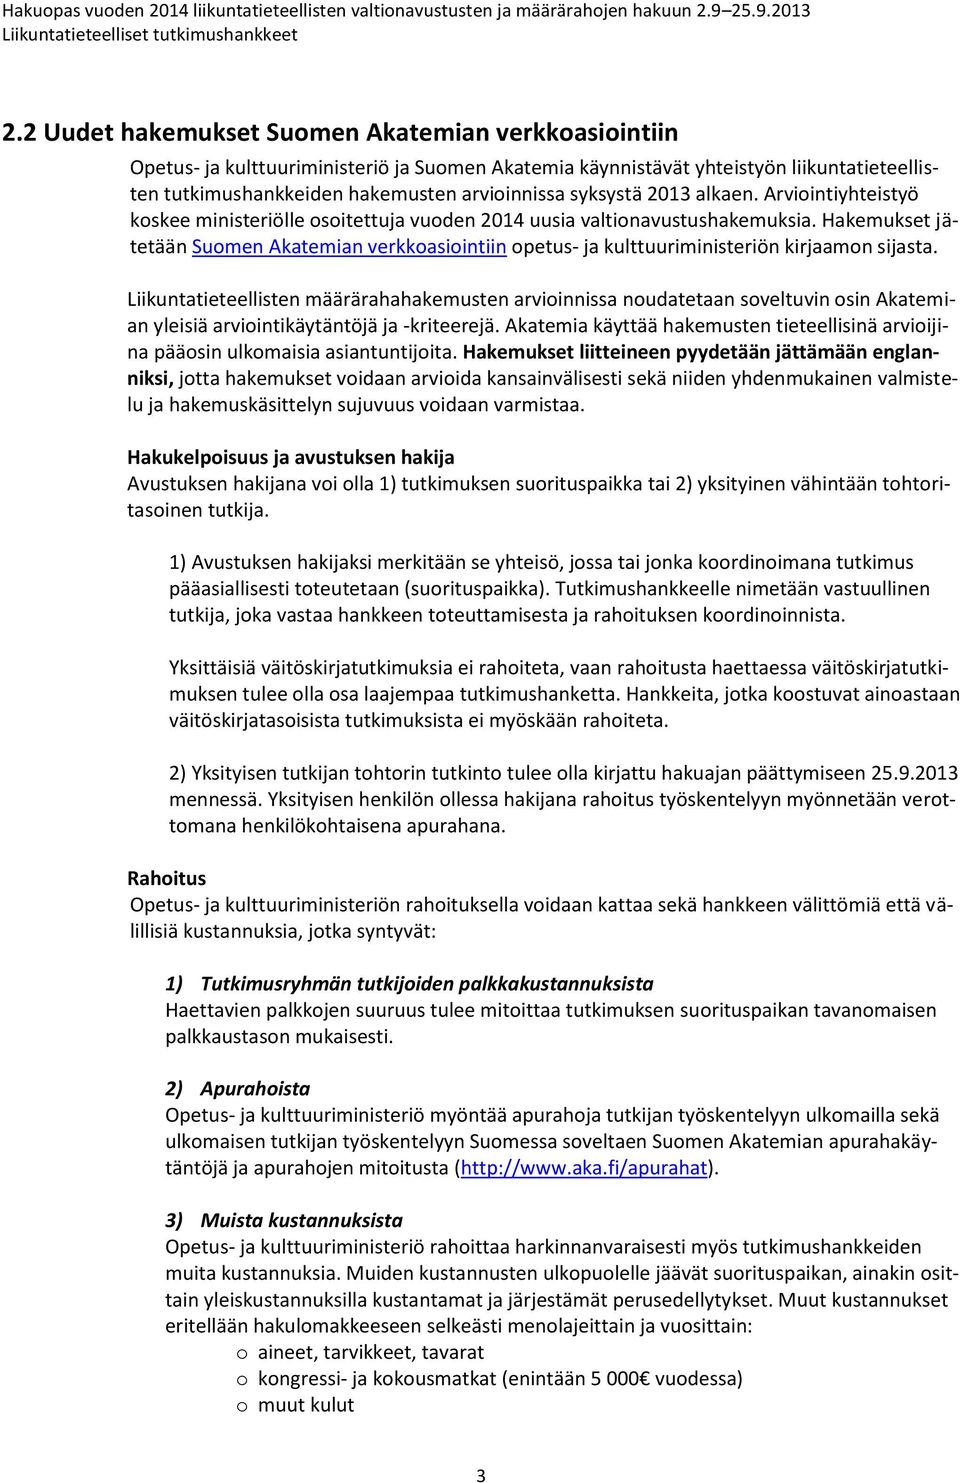 Hakemukset jätetään Suomen Akatemian verkkoasiointiin opetus- ja kulttuuriministeriön kirjaamon sijasta.